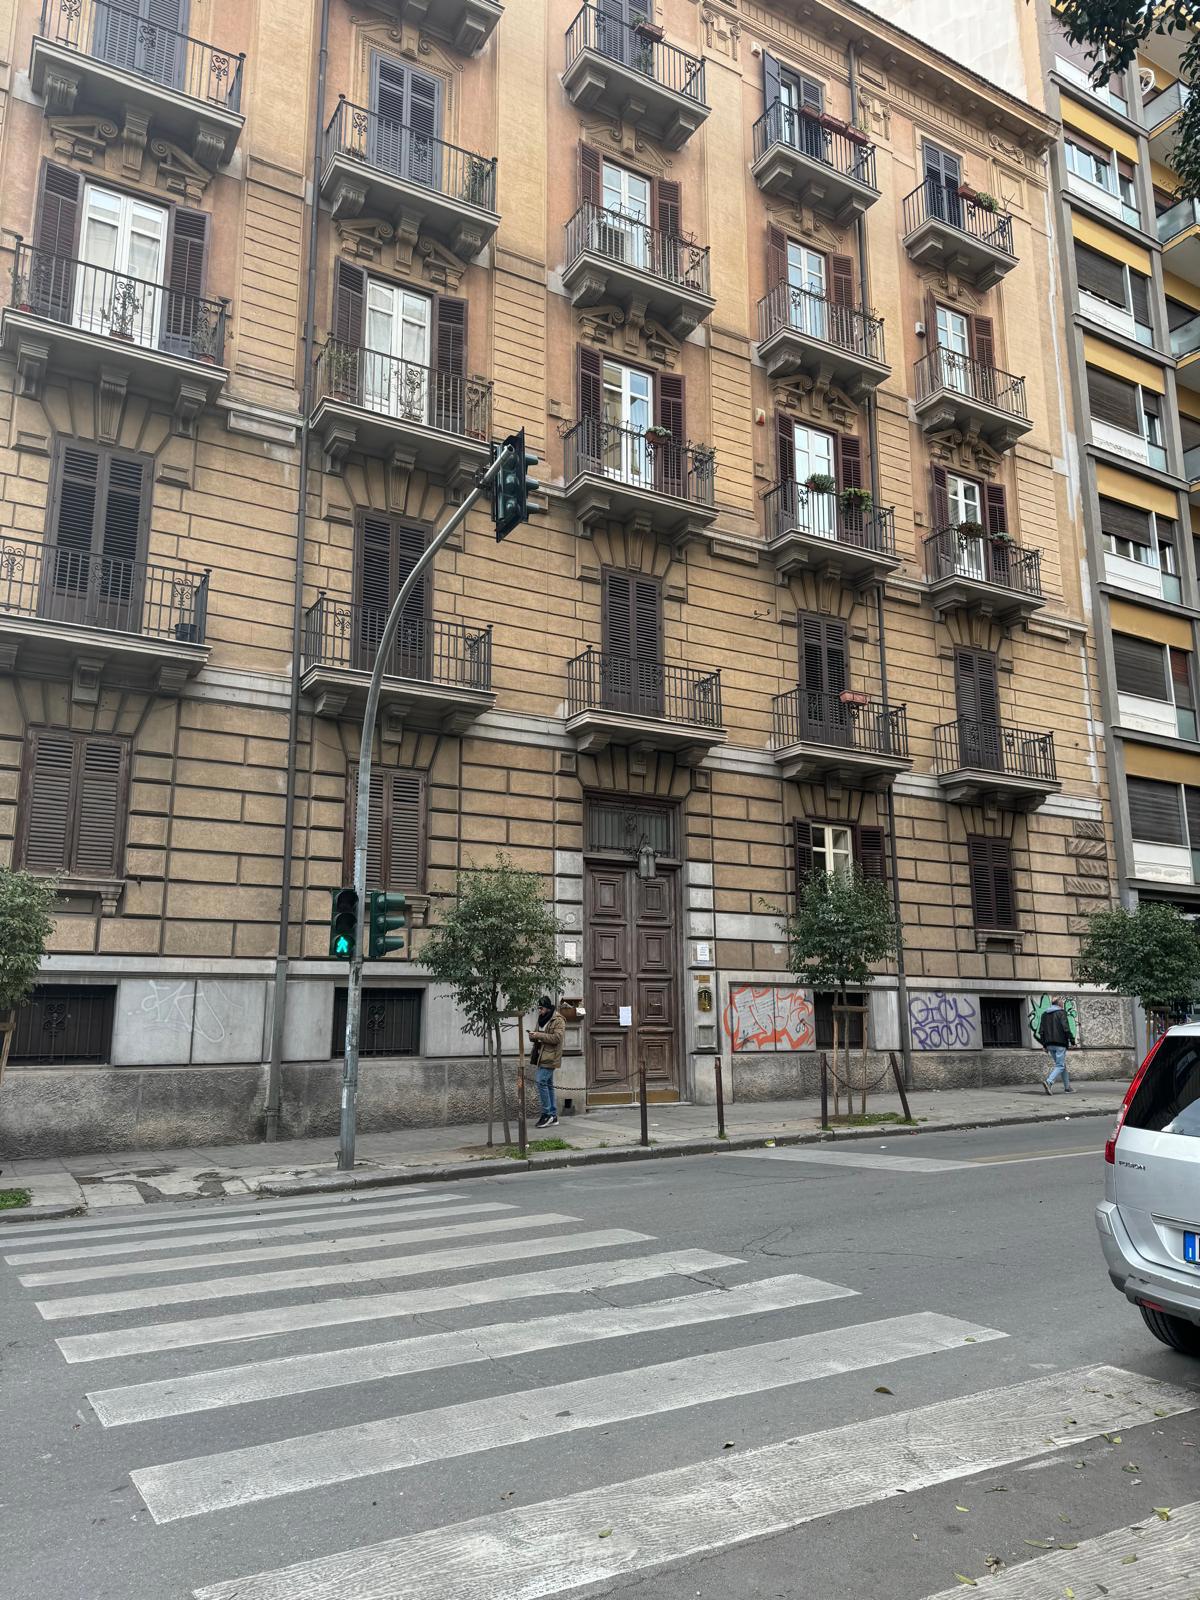 Ufficio in vendita a Palermo